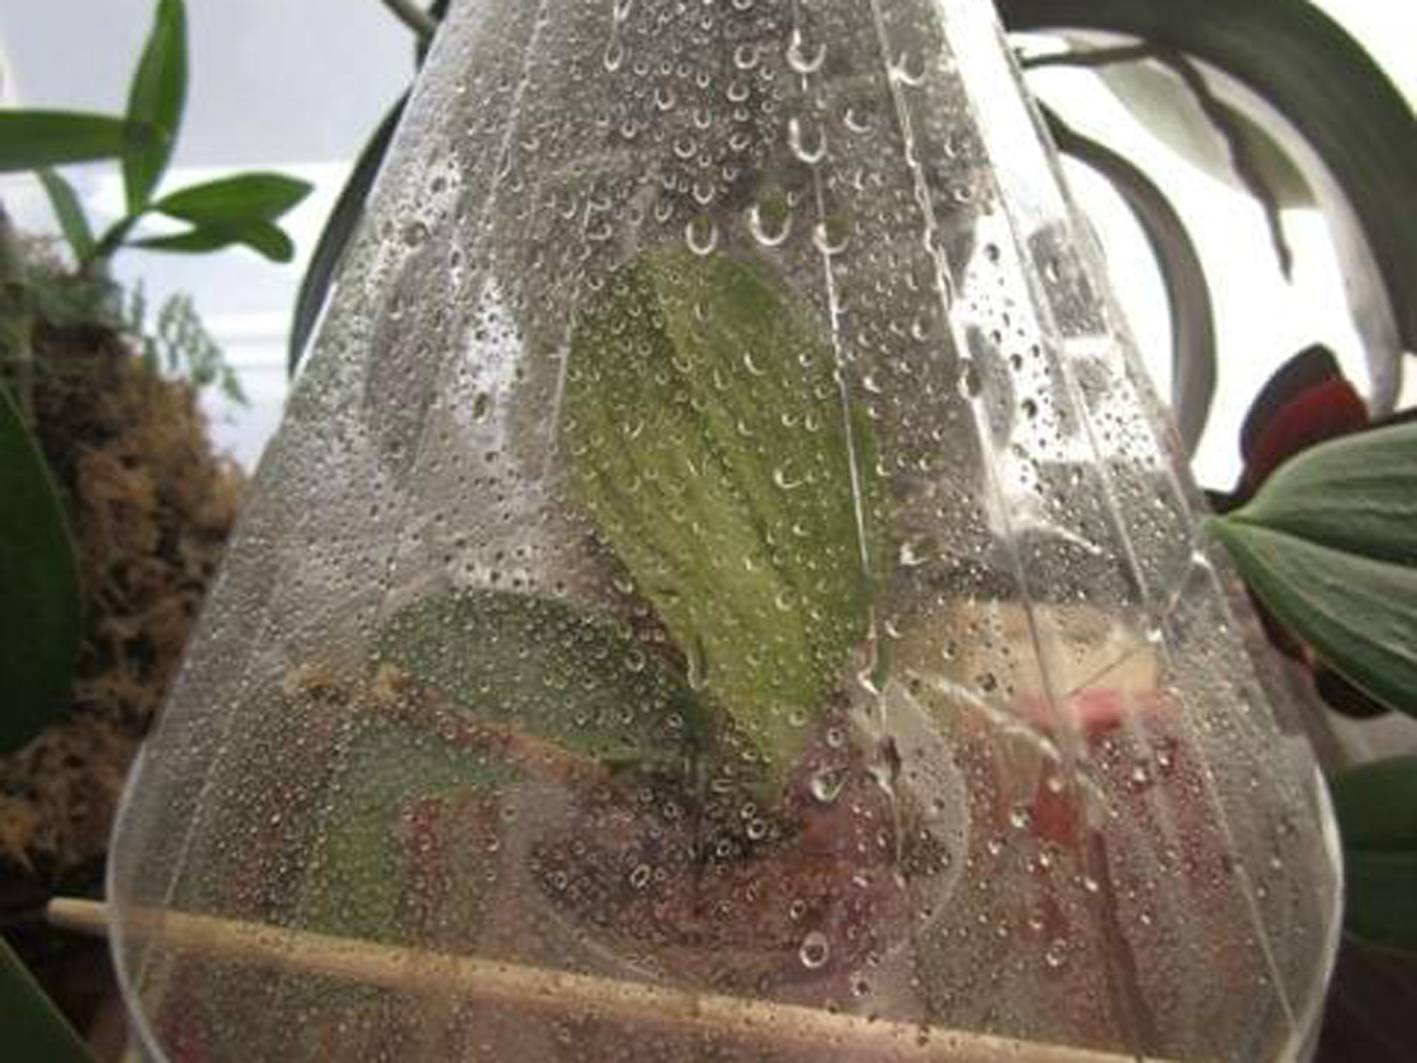 Как вырастить орхидею из семян в домашних условиях: инструкция